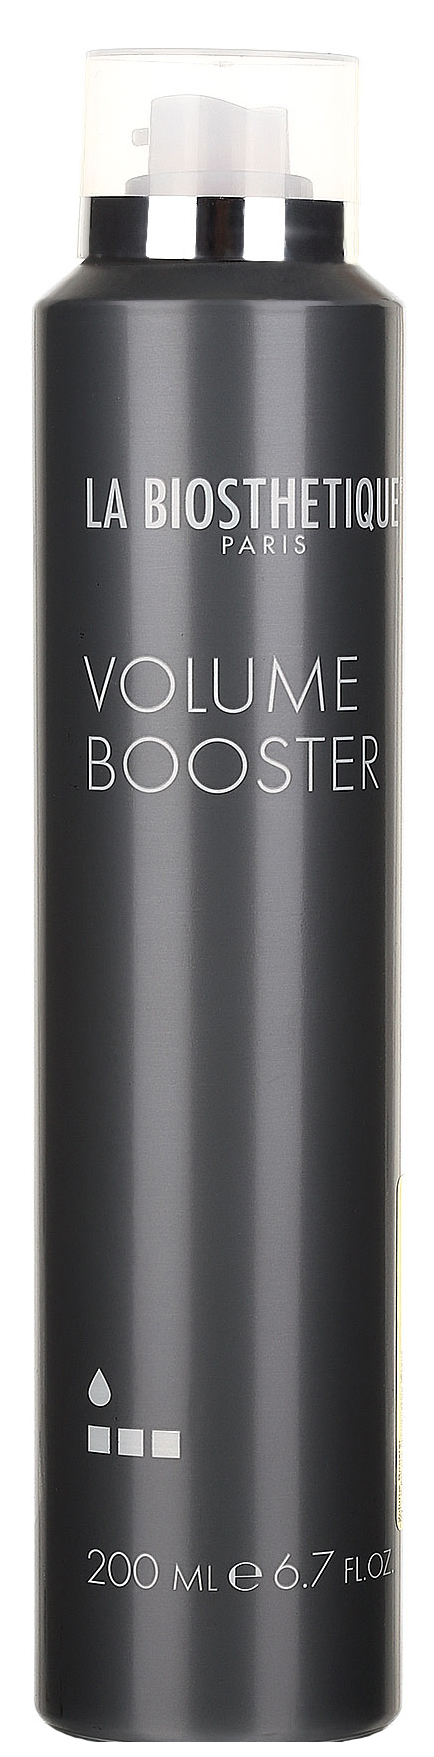 Мусс для волос La Biosthetique Base Volume Booster 200 мл мусс для волос la biosthetique base volume booster 200 мл